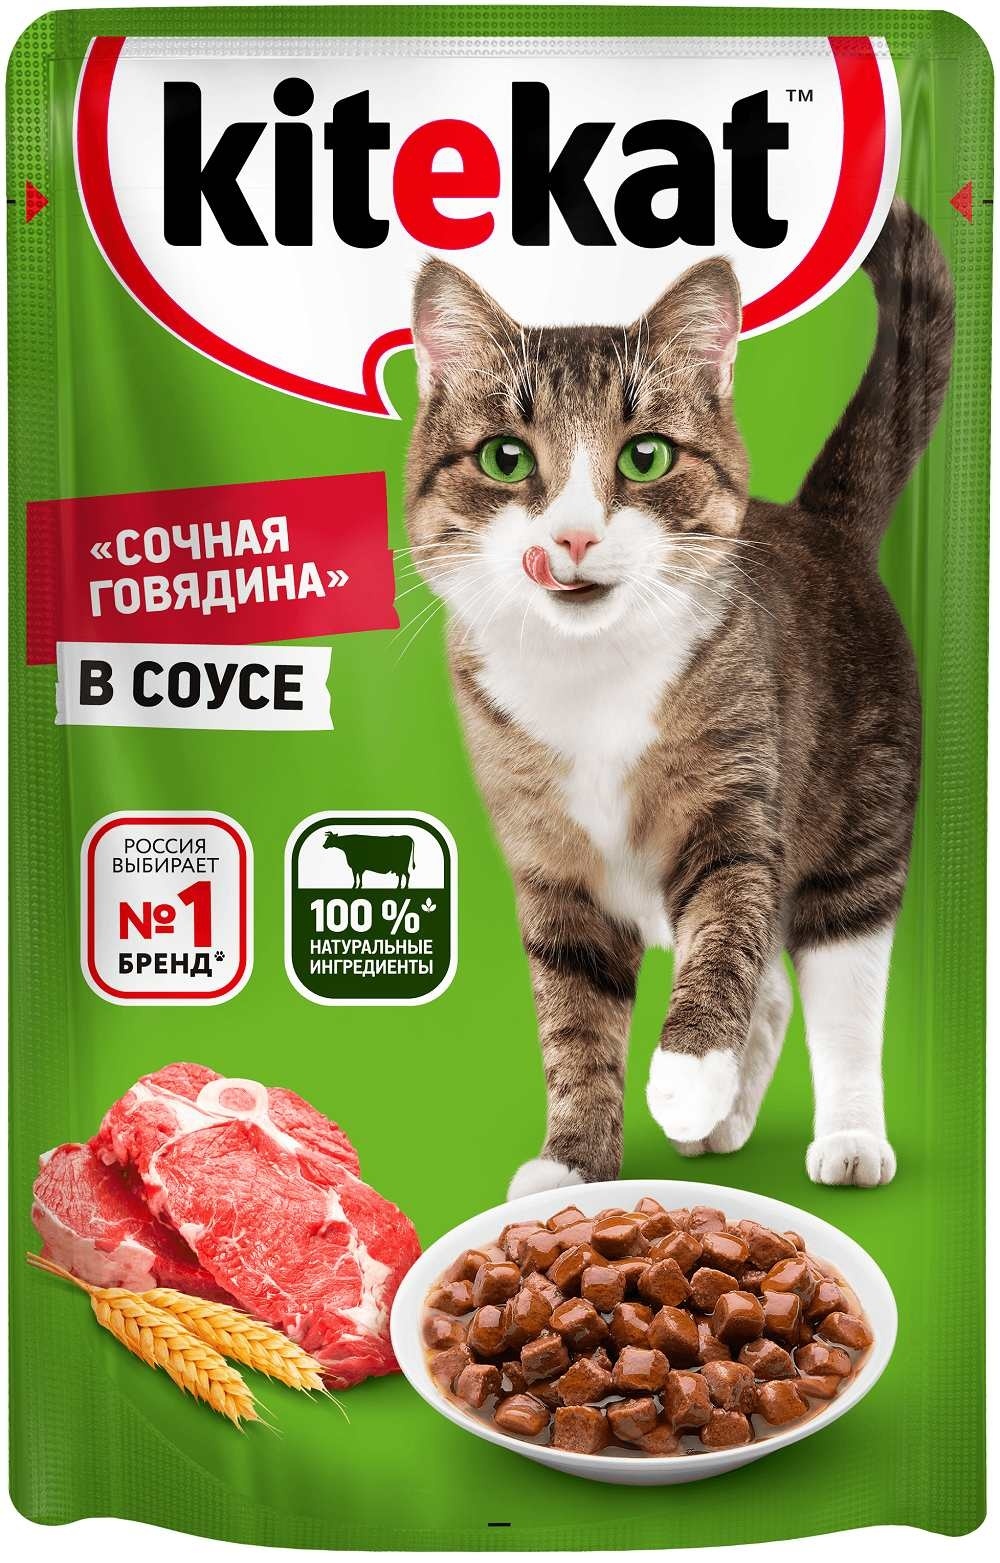 Kitekat влажный корм для взрослых кошек со вкусом говядины в соусе «Сочная говядина», 85г (85 г)